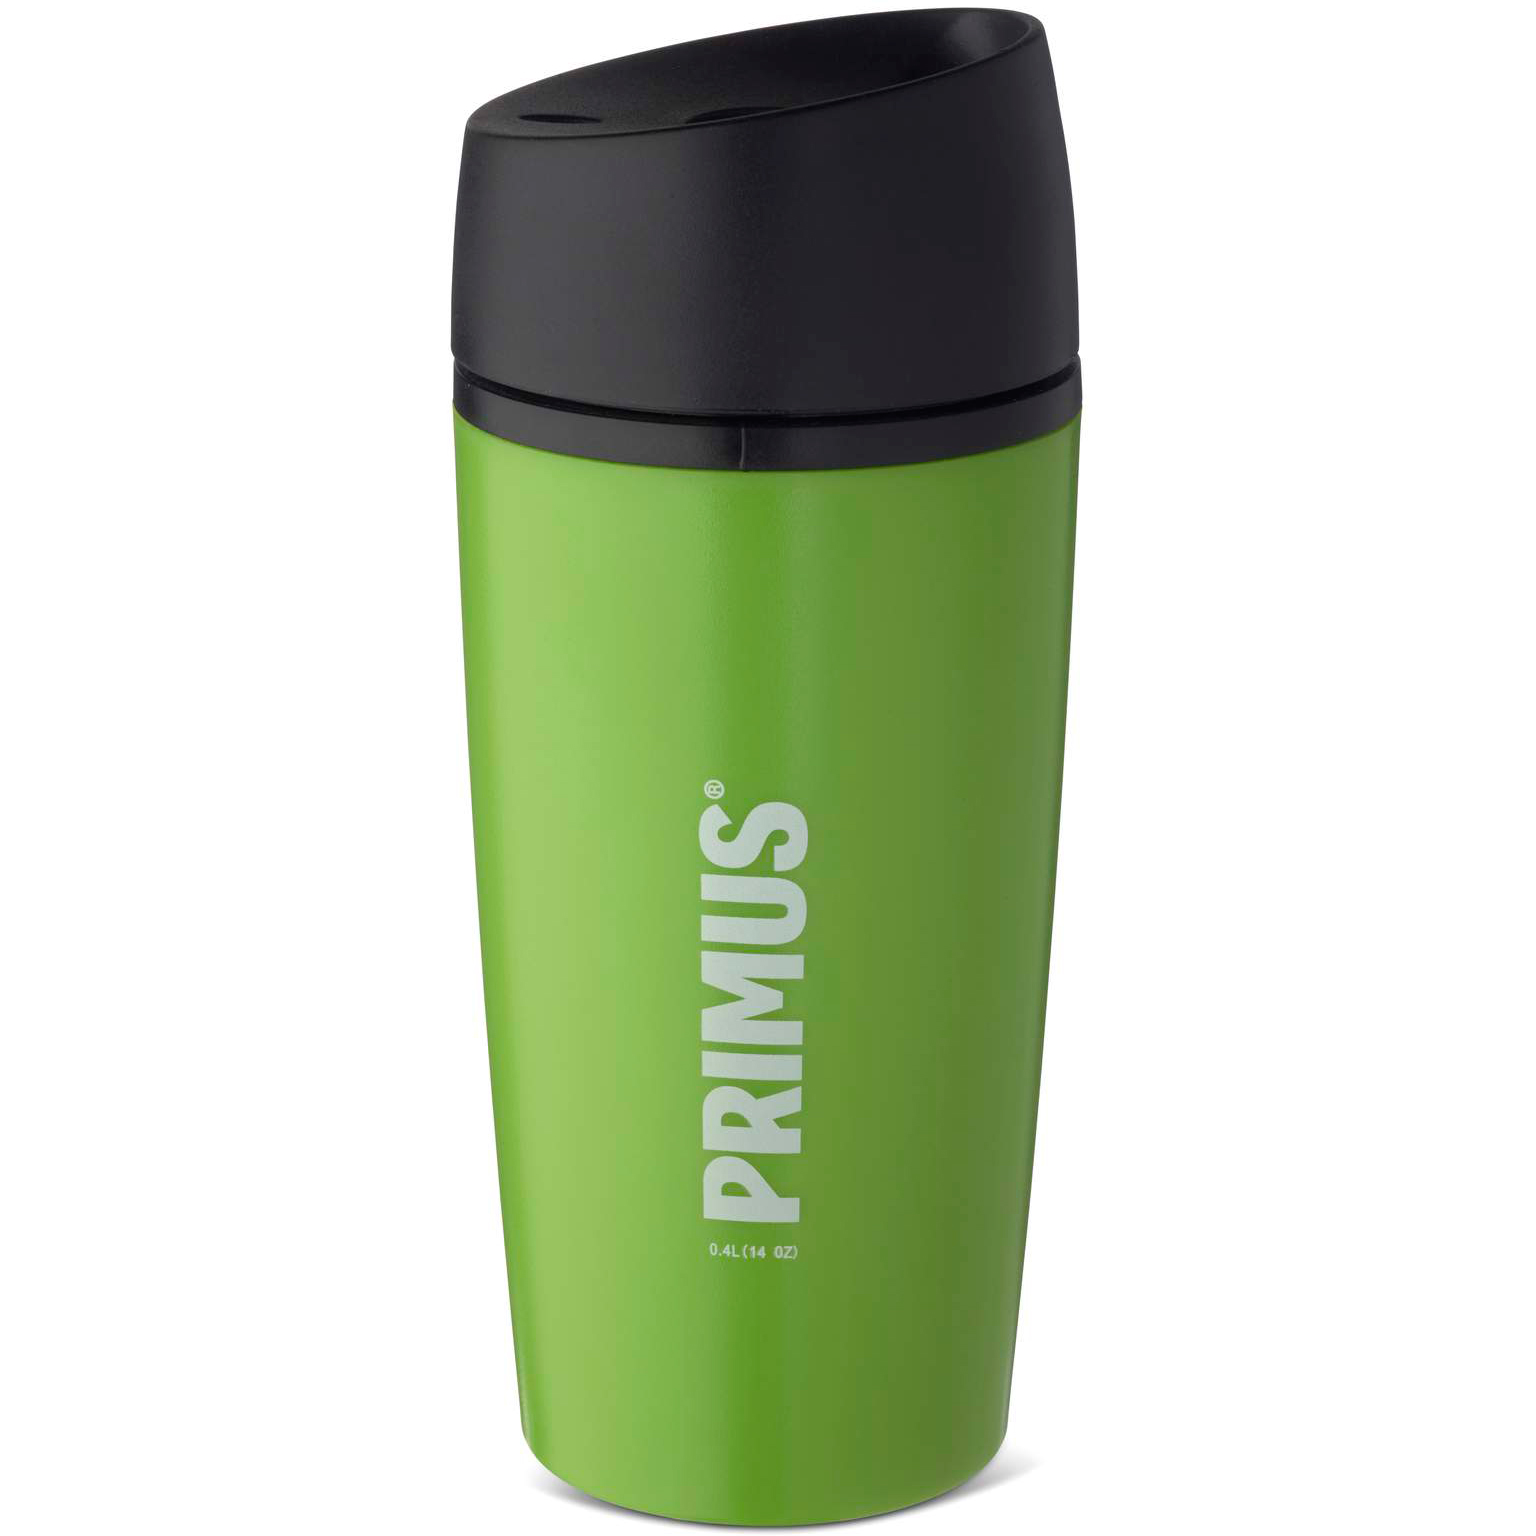 Produktbild von Primus Commuter Mug 0.4 Liter Becher - leaf green